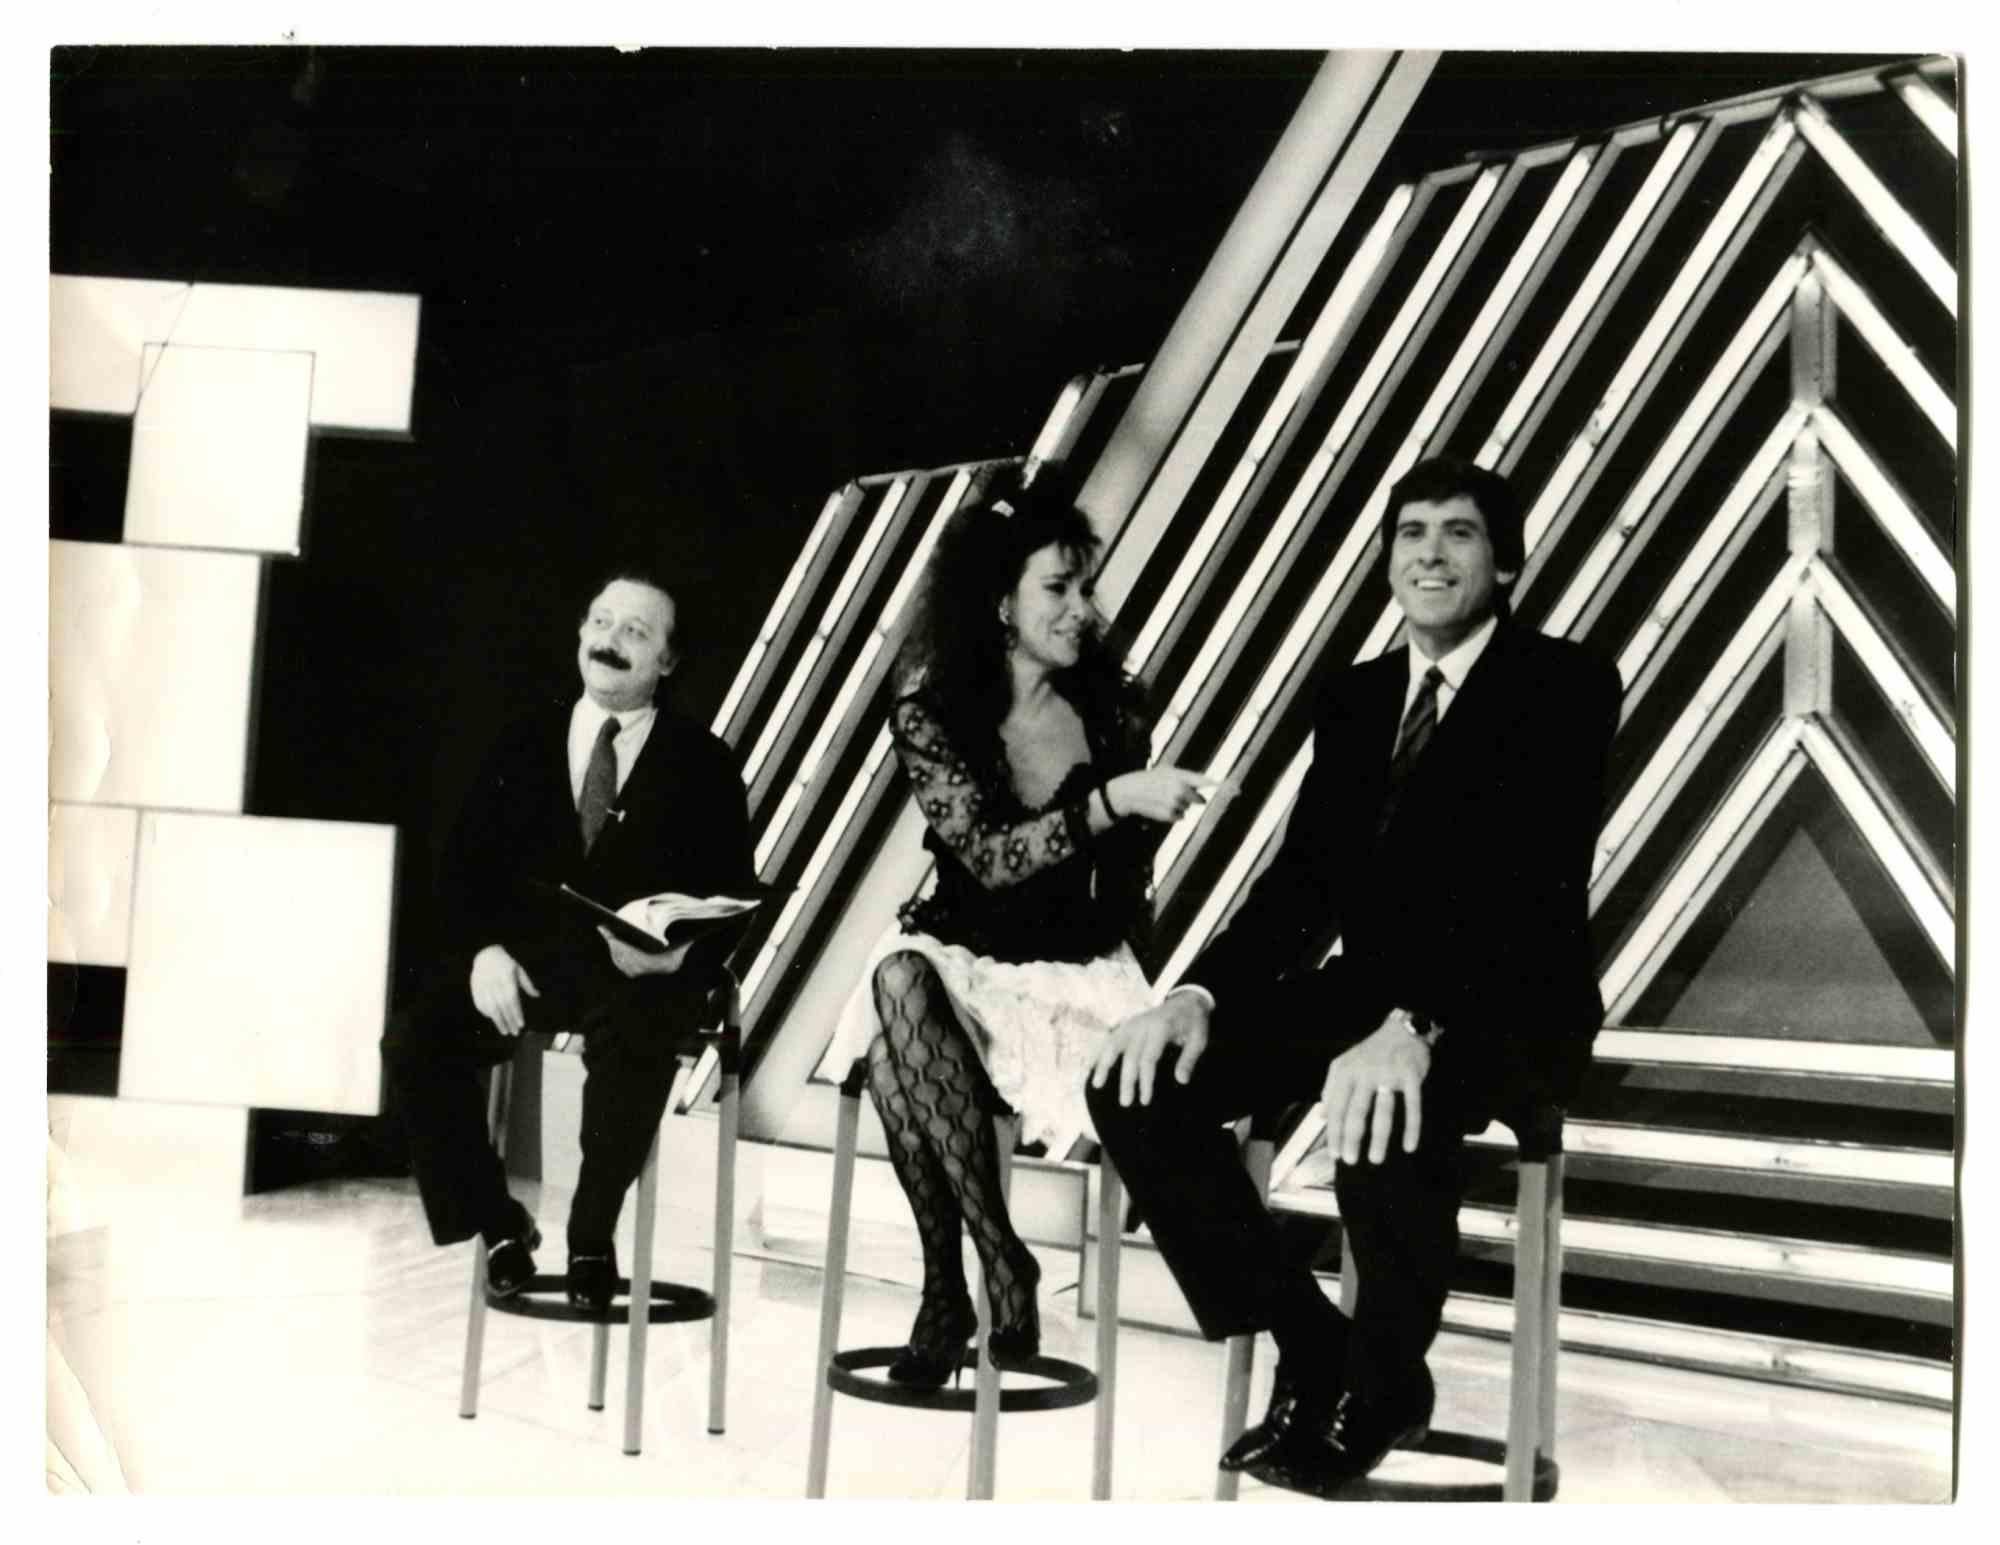 Gianni Minà, Ana Obregon und Gianni Morandi - Foto - 1980er Jahre